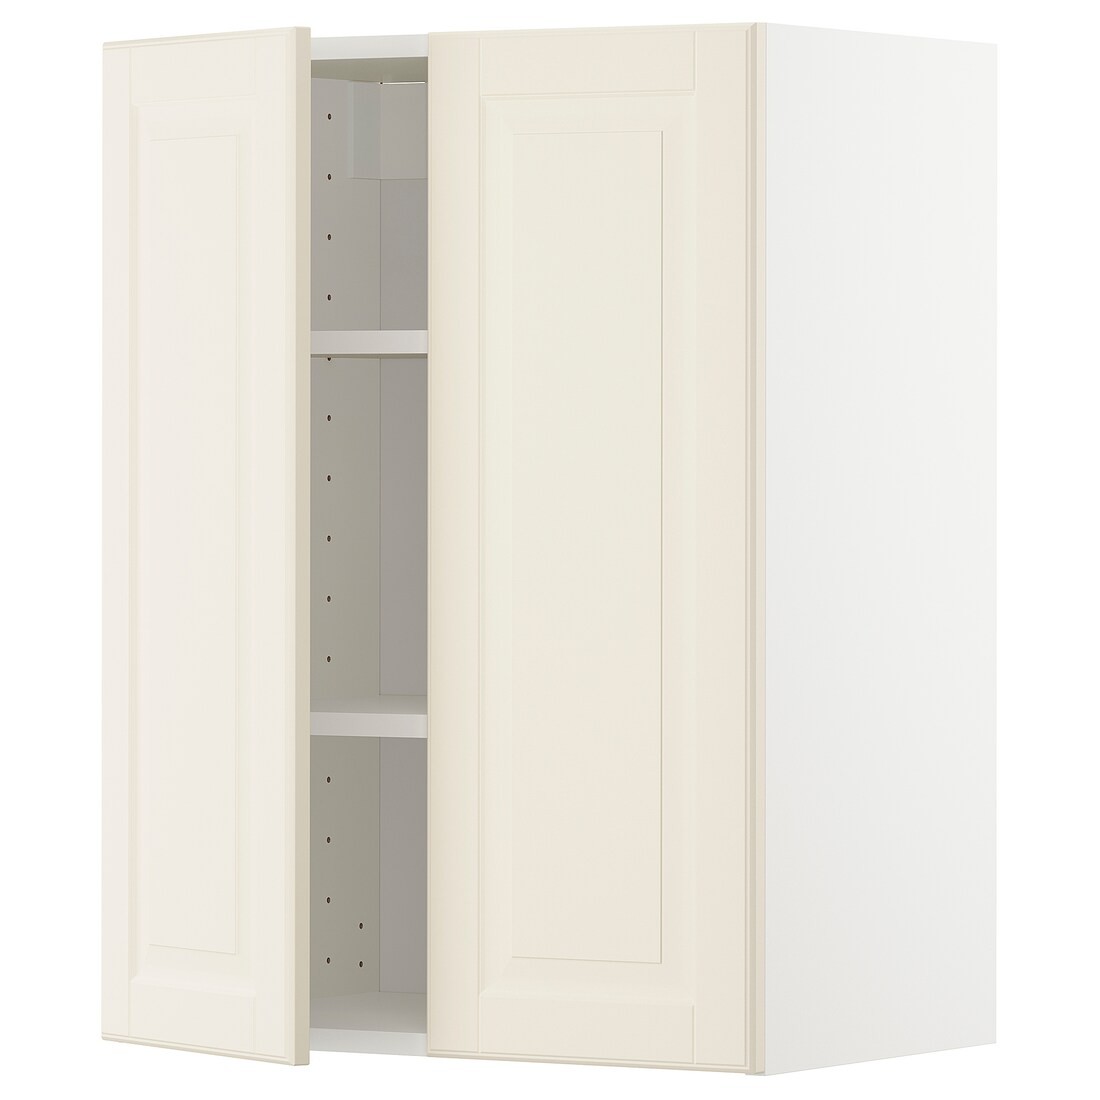 IKEA METOD МЕТОД Навесной шкаф с полками / 2 дверцы, белый / Bodbyn кремовый, 60x80 см 89457623 894.576.23